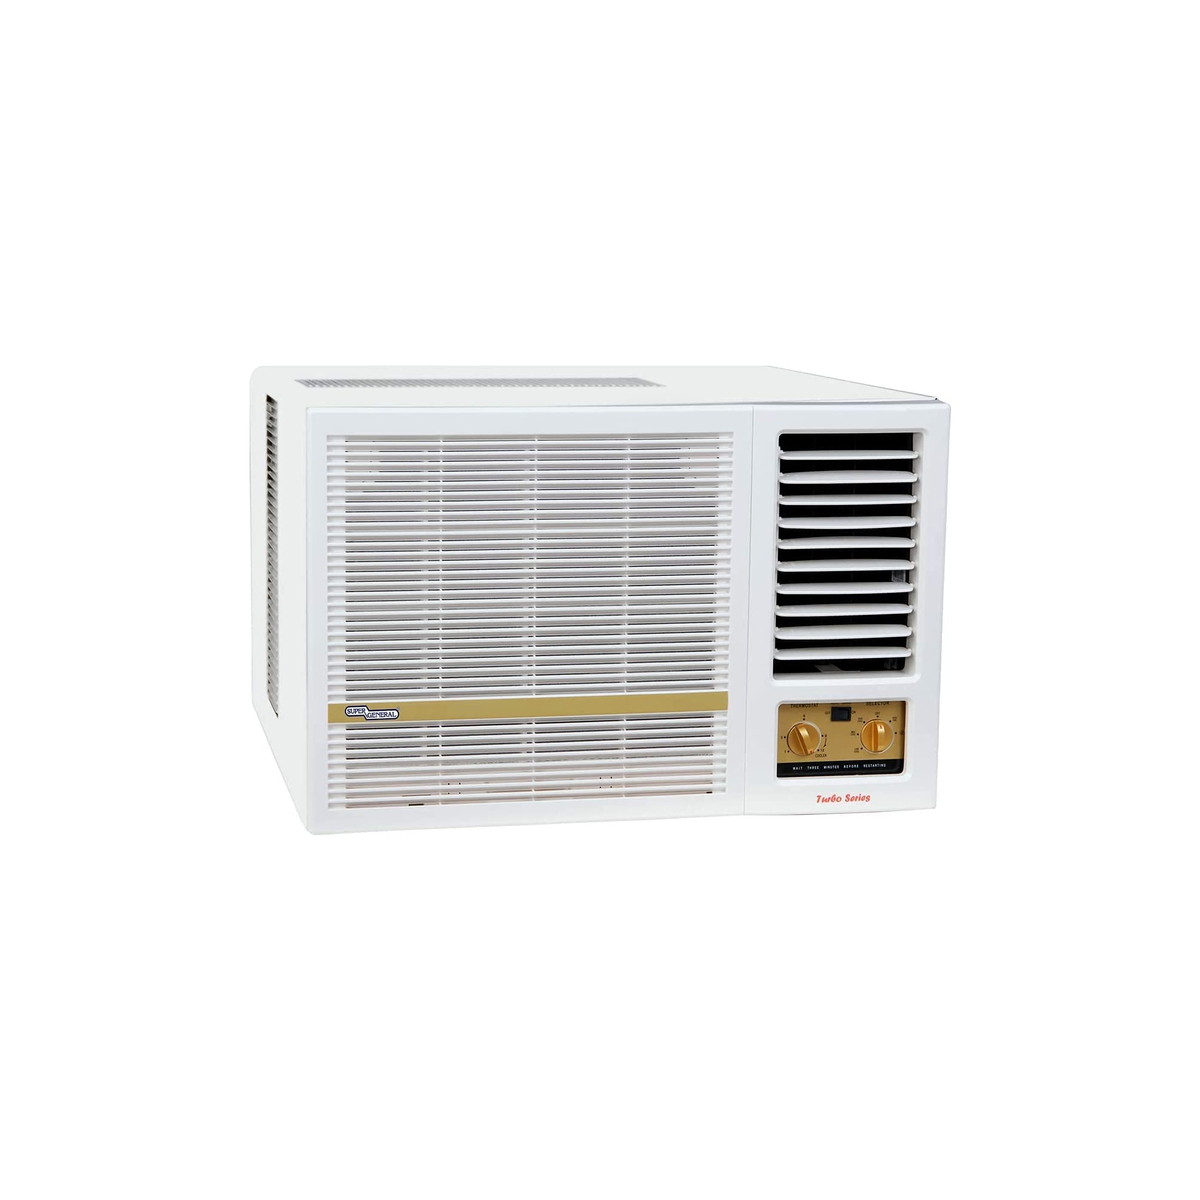 Super General 2 T, Window Air Conditioner, White, SGA248-NE